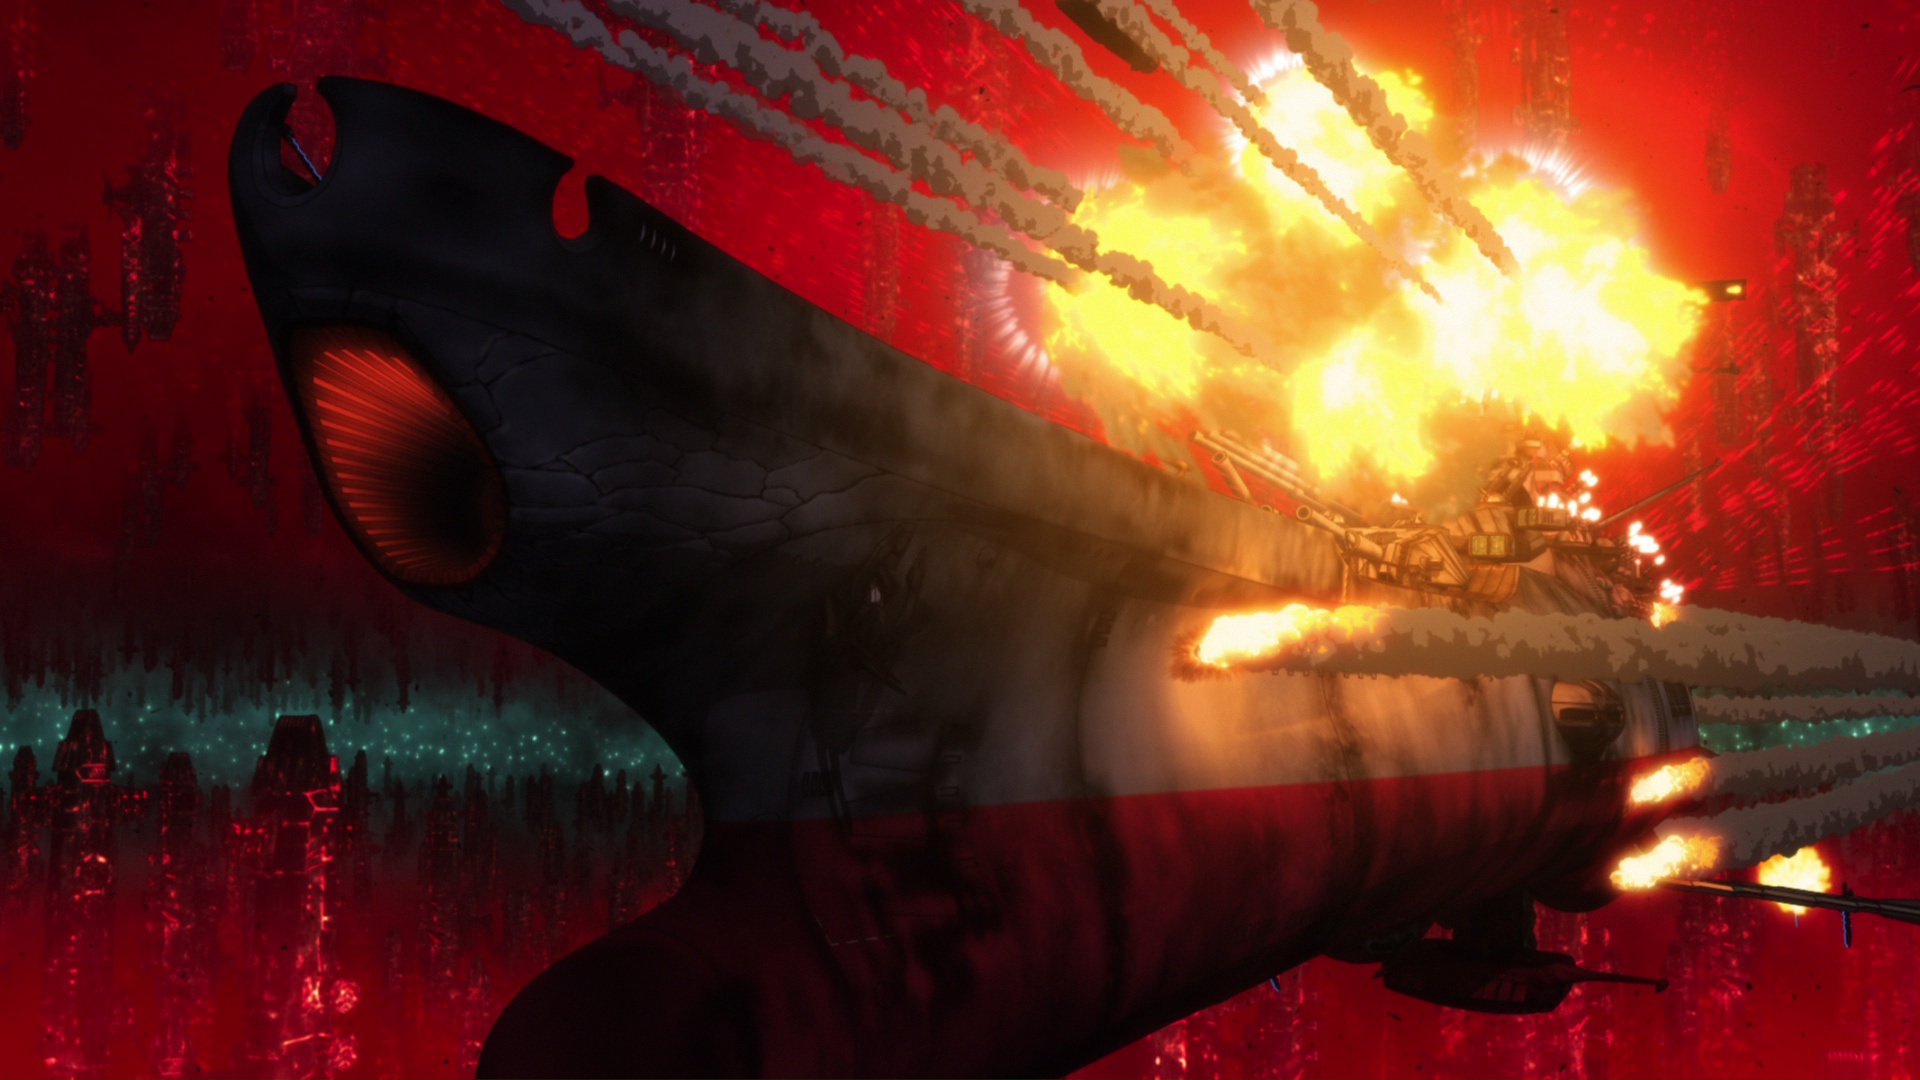 宇宙戦艦ヤマト22 愛の戦士たち 第七章 新生篇 本予告ついに解禁 最新場面写真も公開 Cinematopics